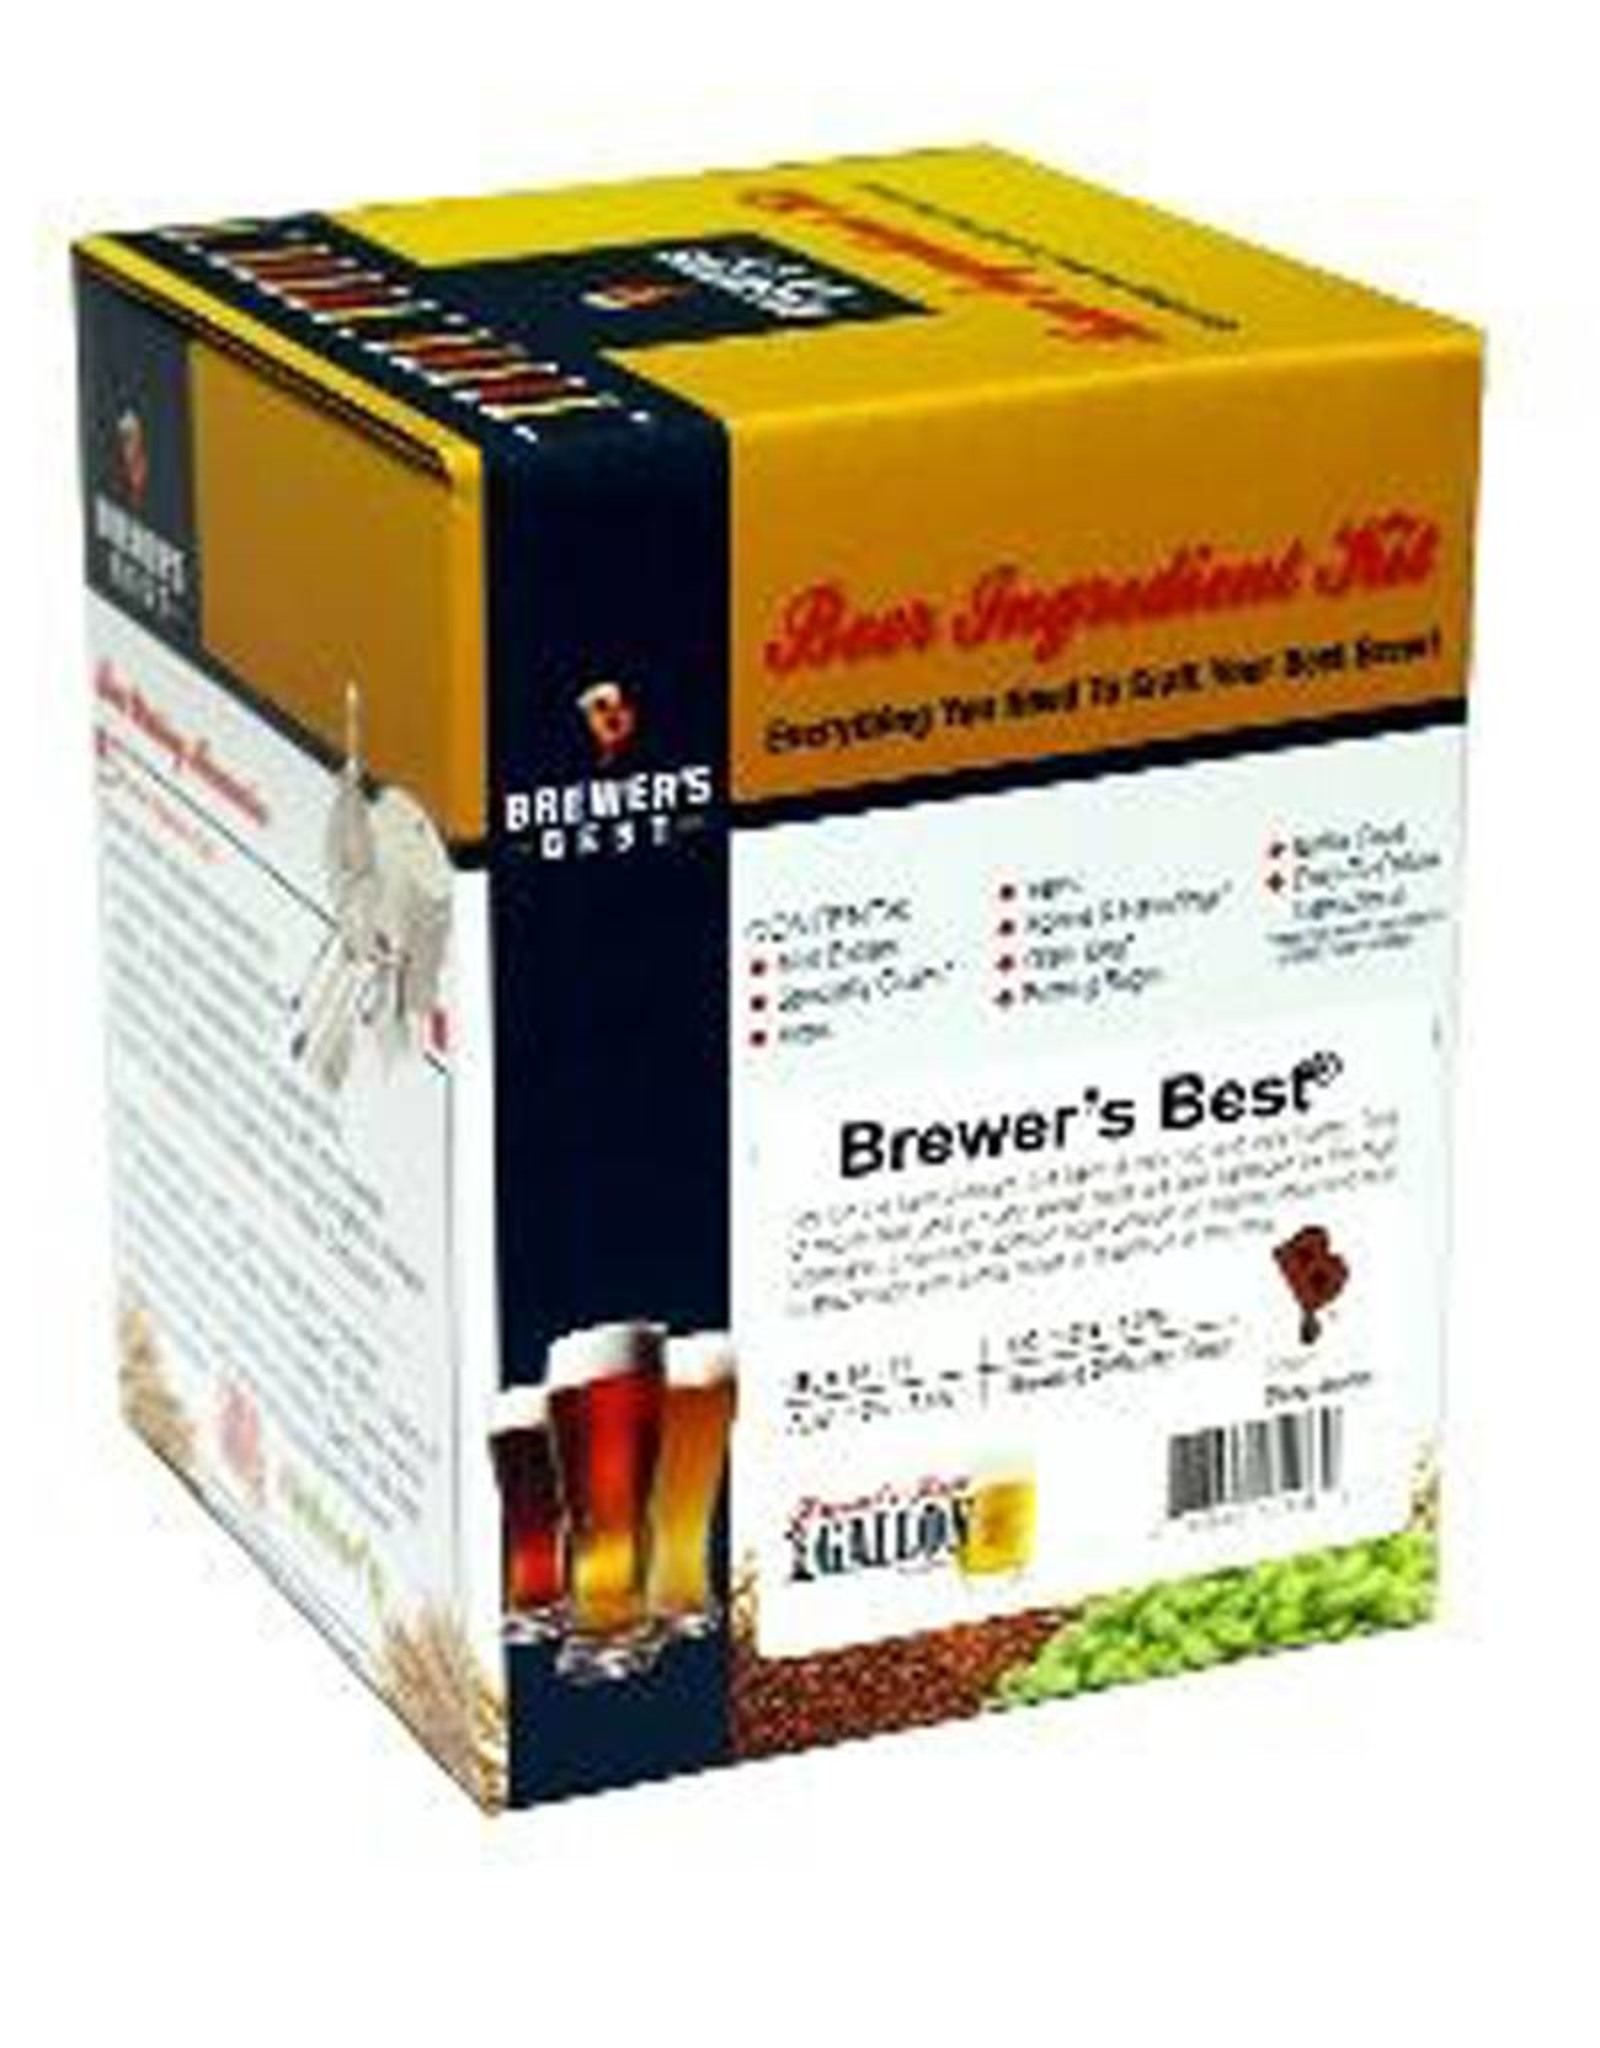 Brewer's Best Scottish Ale ingredient Kit